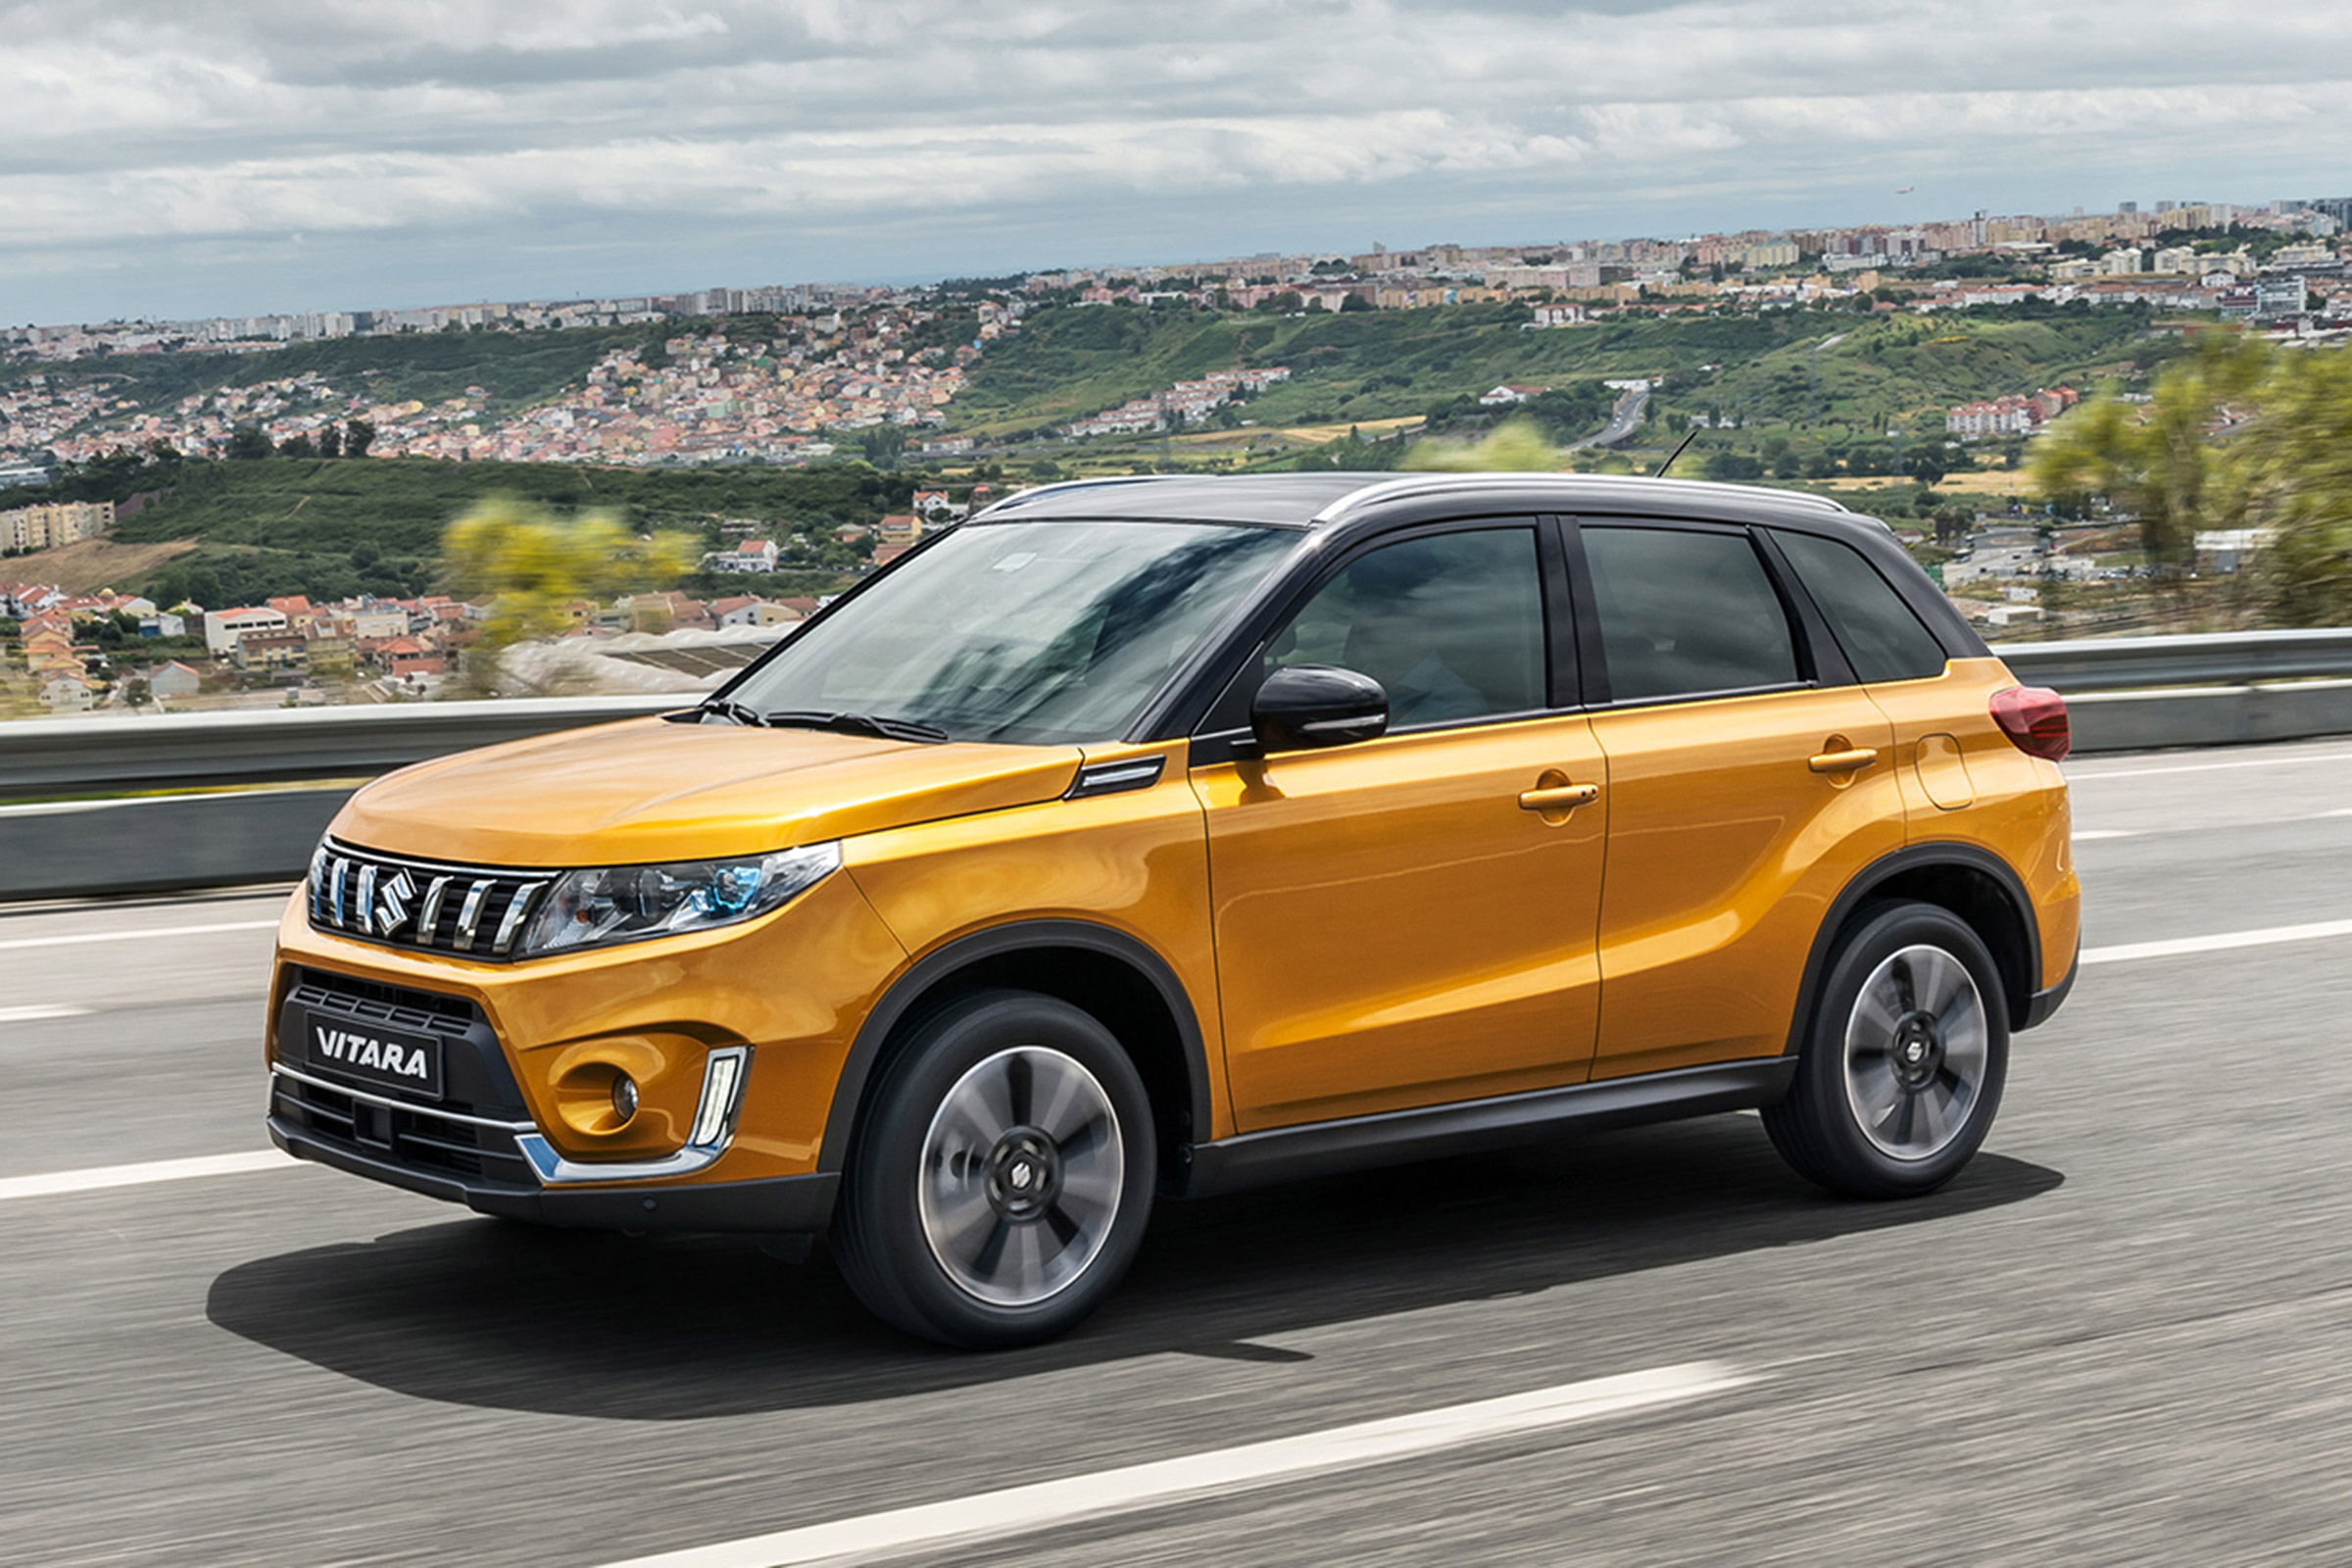 2019 Suzuki Vitara prices, specs and release date Auto